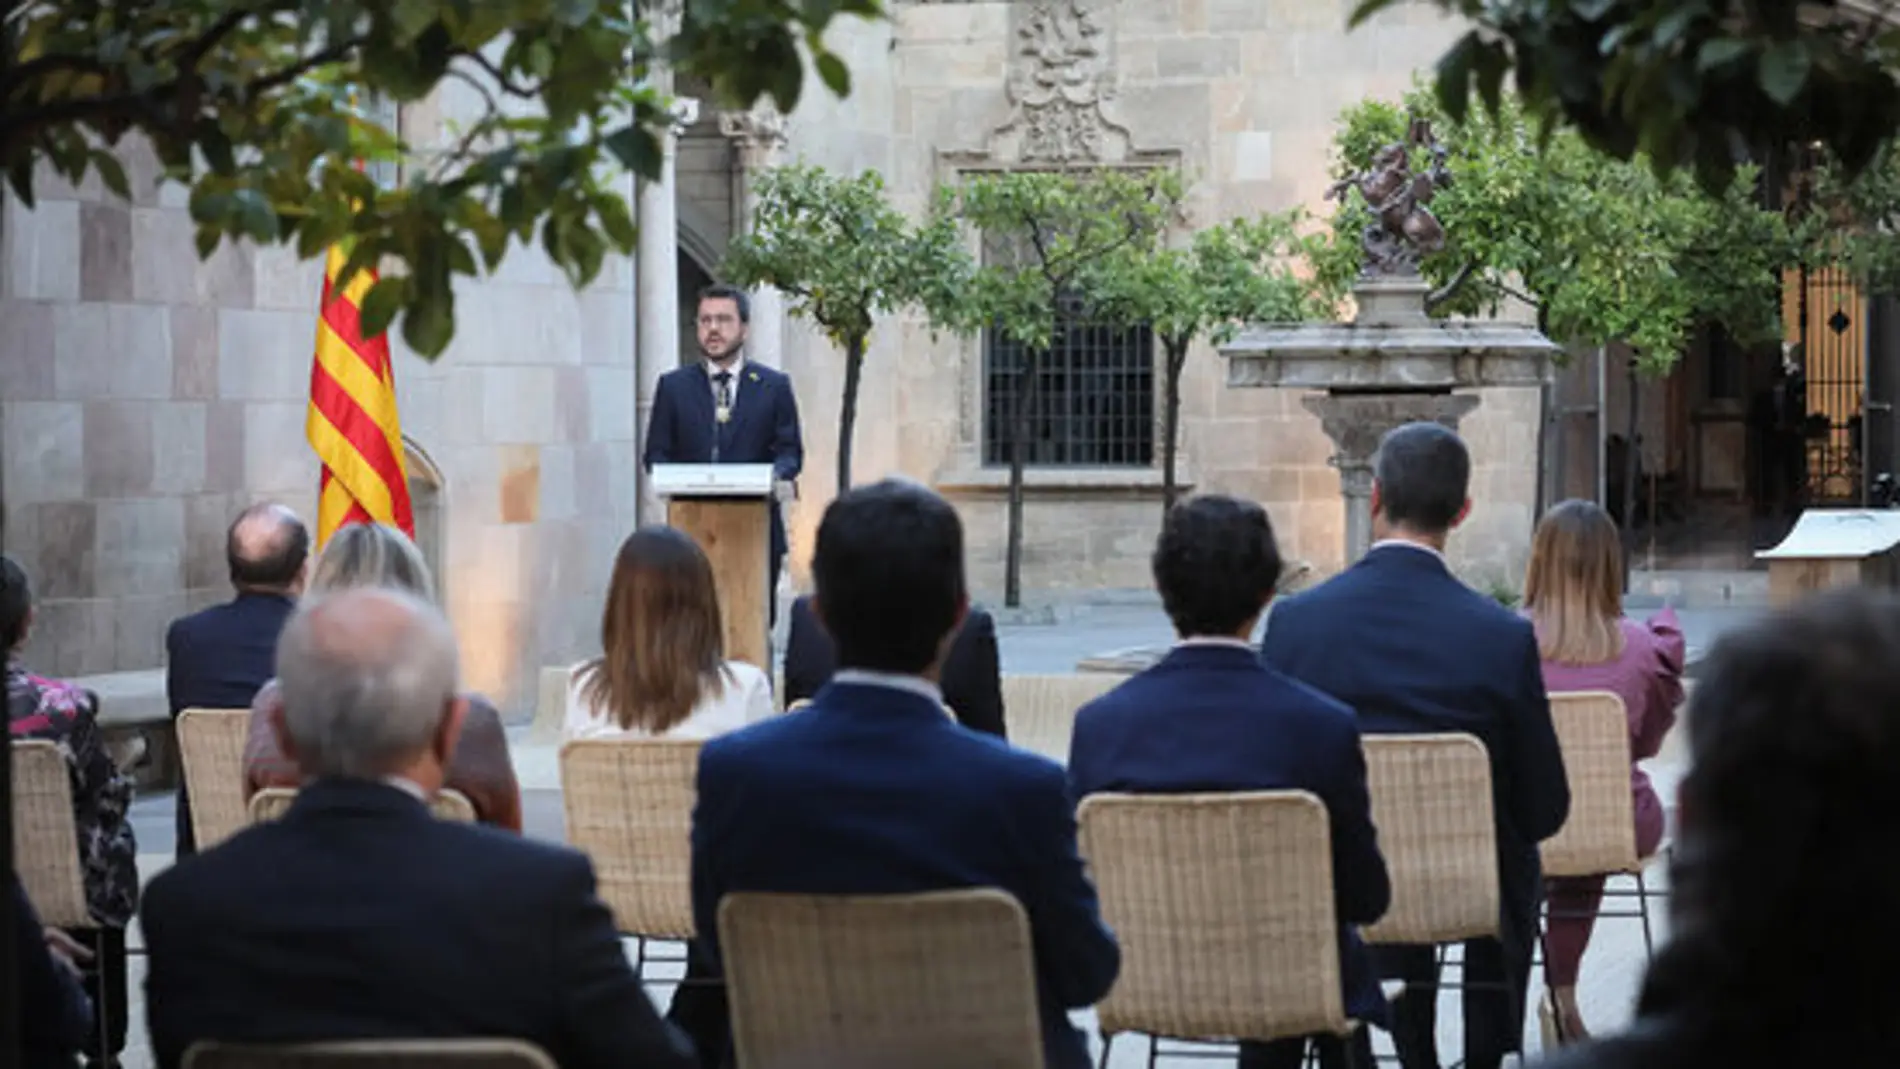 Pla general del president de la Generalitat, Pere Aragonès, en el seu discurs d'investidura al Pati dels Tarongers, el 24 de maig de 2021